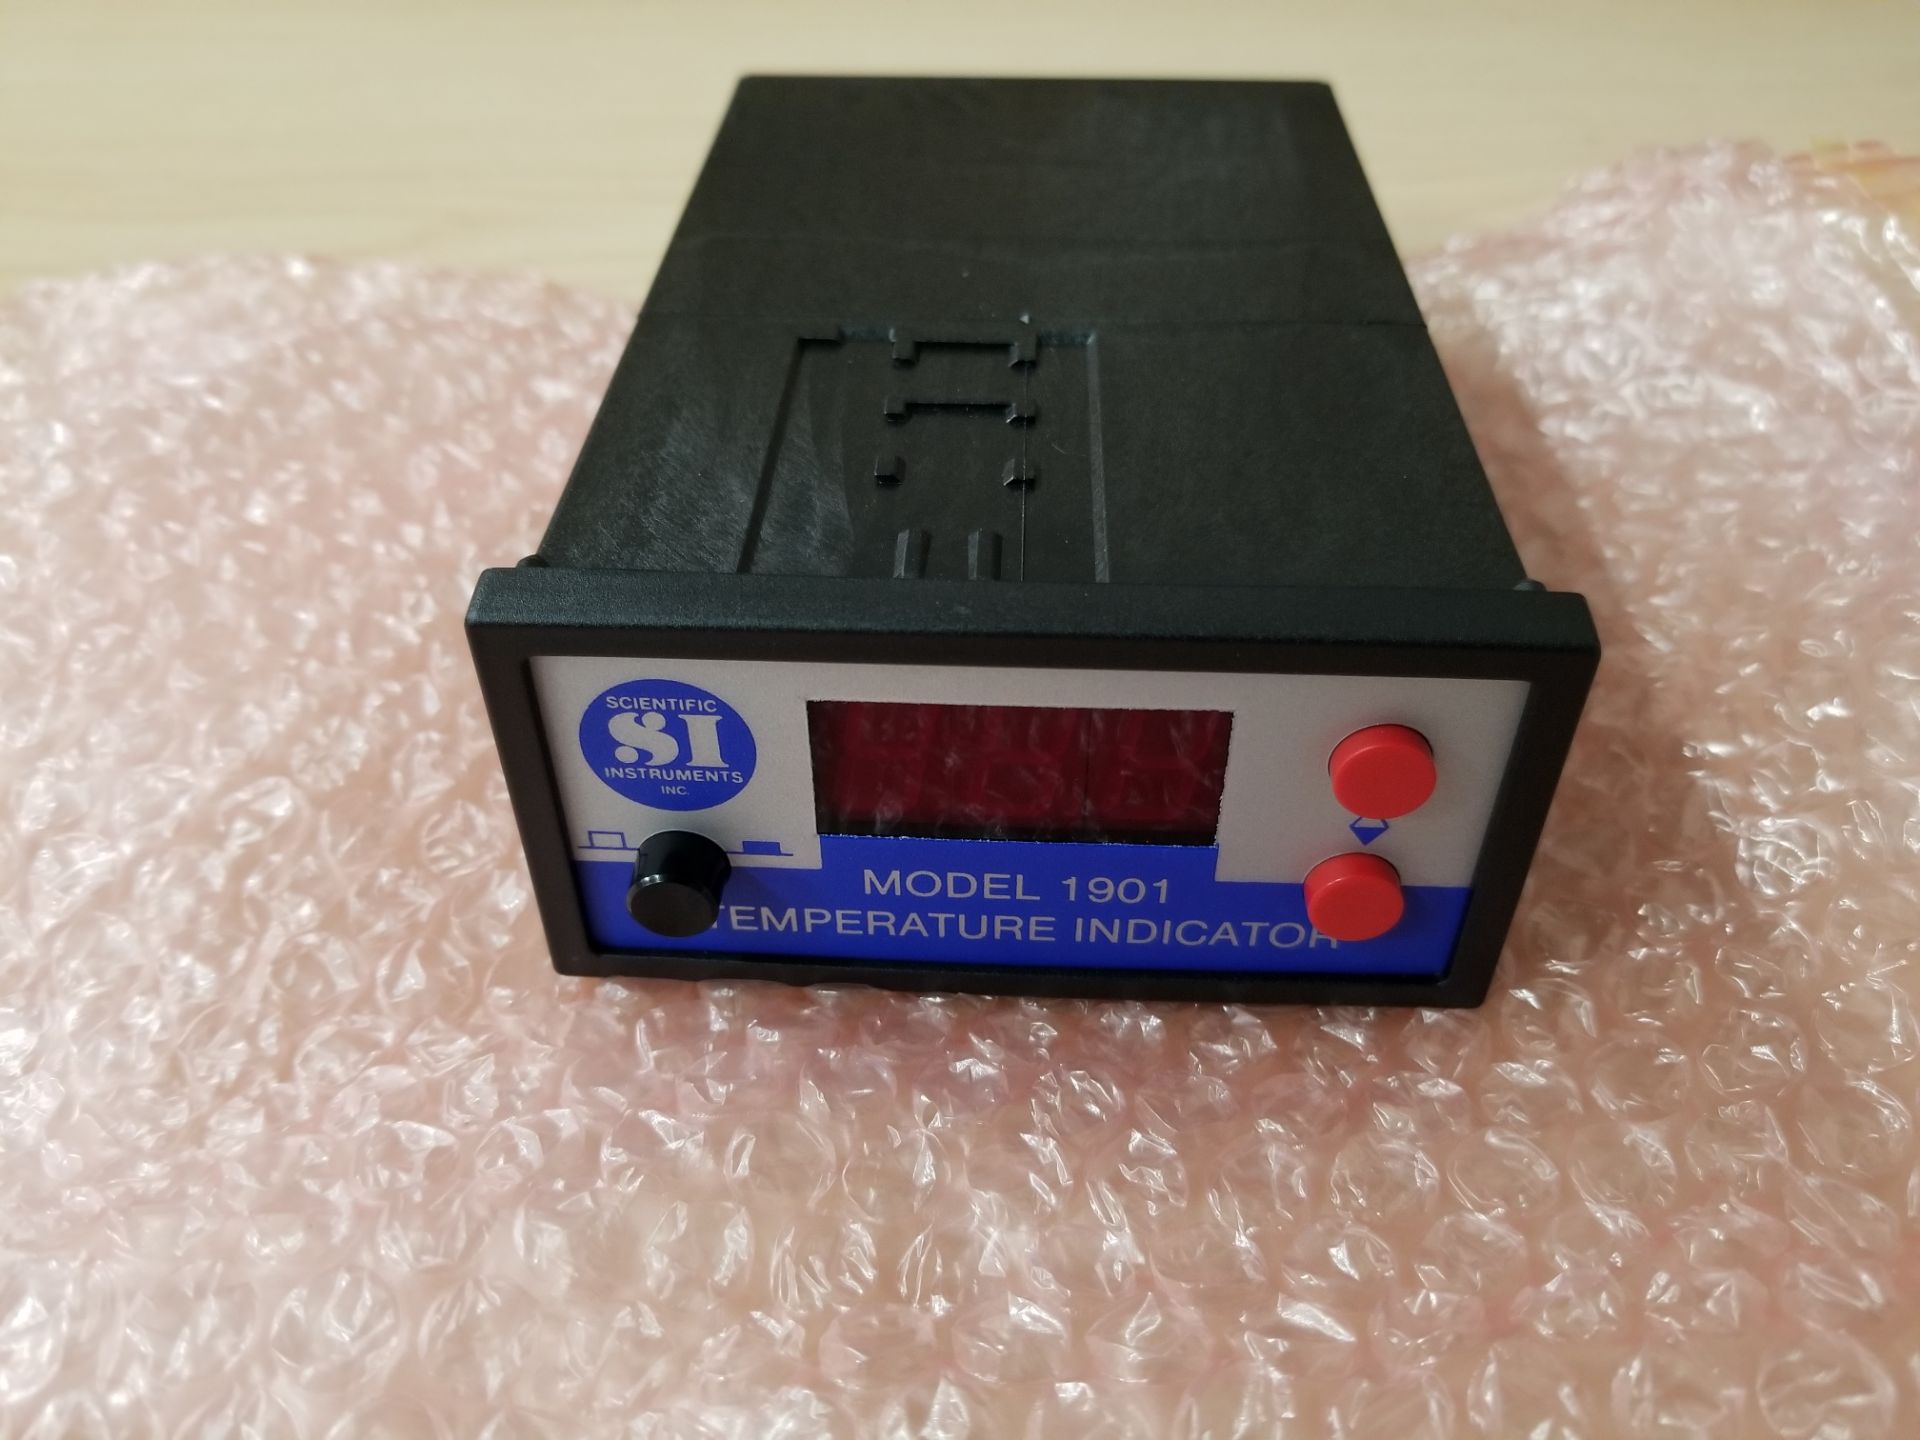 Unused SI Scientific Instruments Temperature Indicator Panel Meter - Image 2 of 4